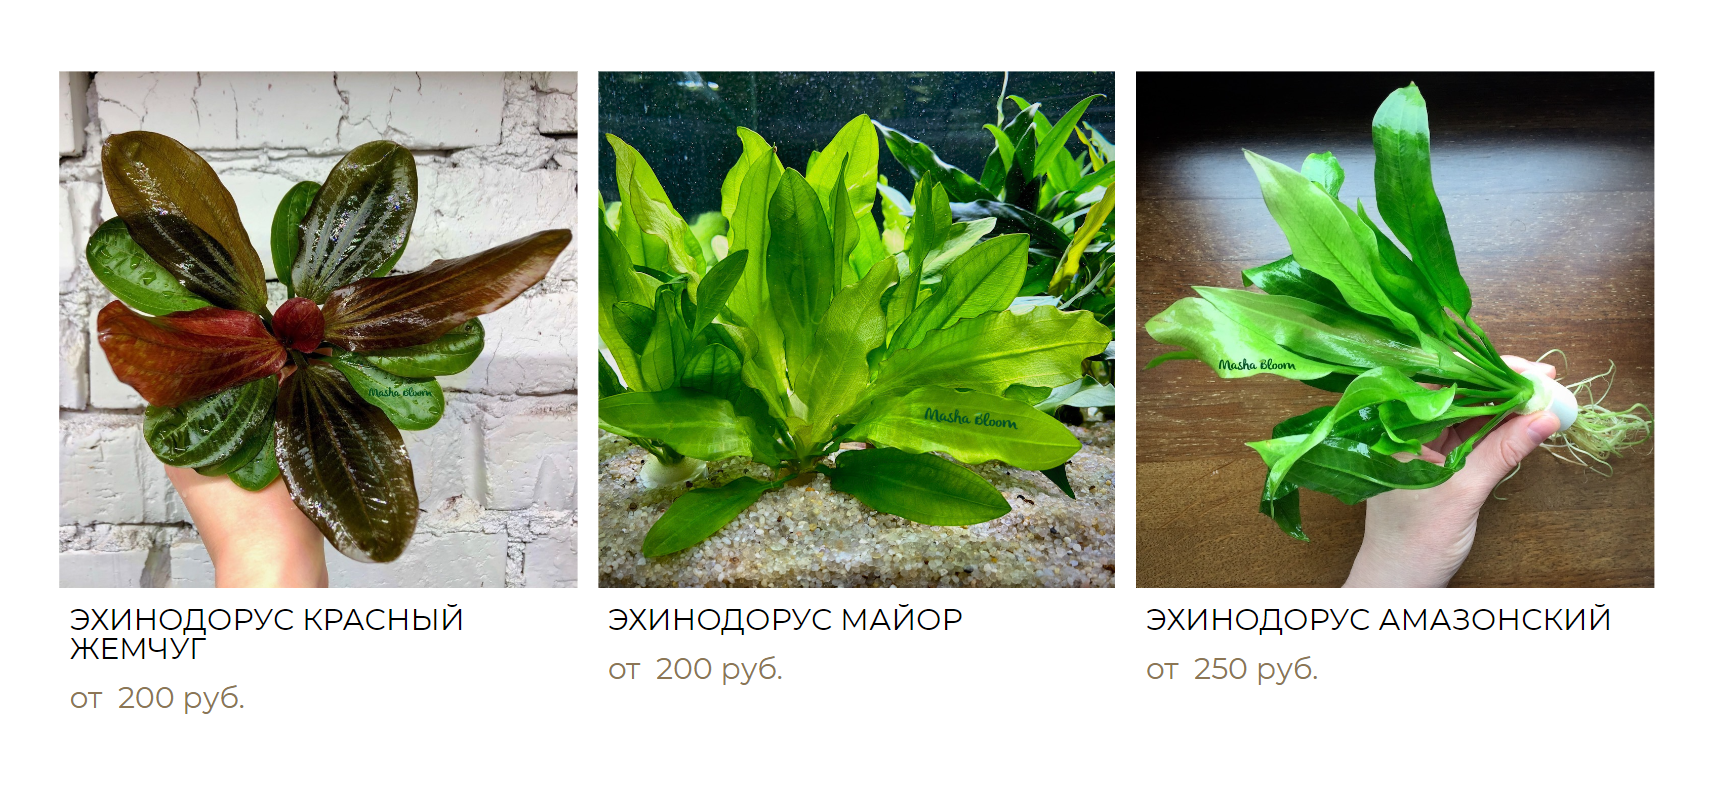 Эхинодорусы и таиландский папоротник — это примеры неприхотливых растений, подходящих для тропического аквариума. Источник: mashabloom.ru